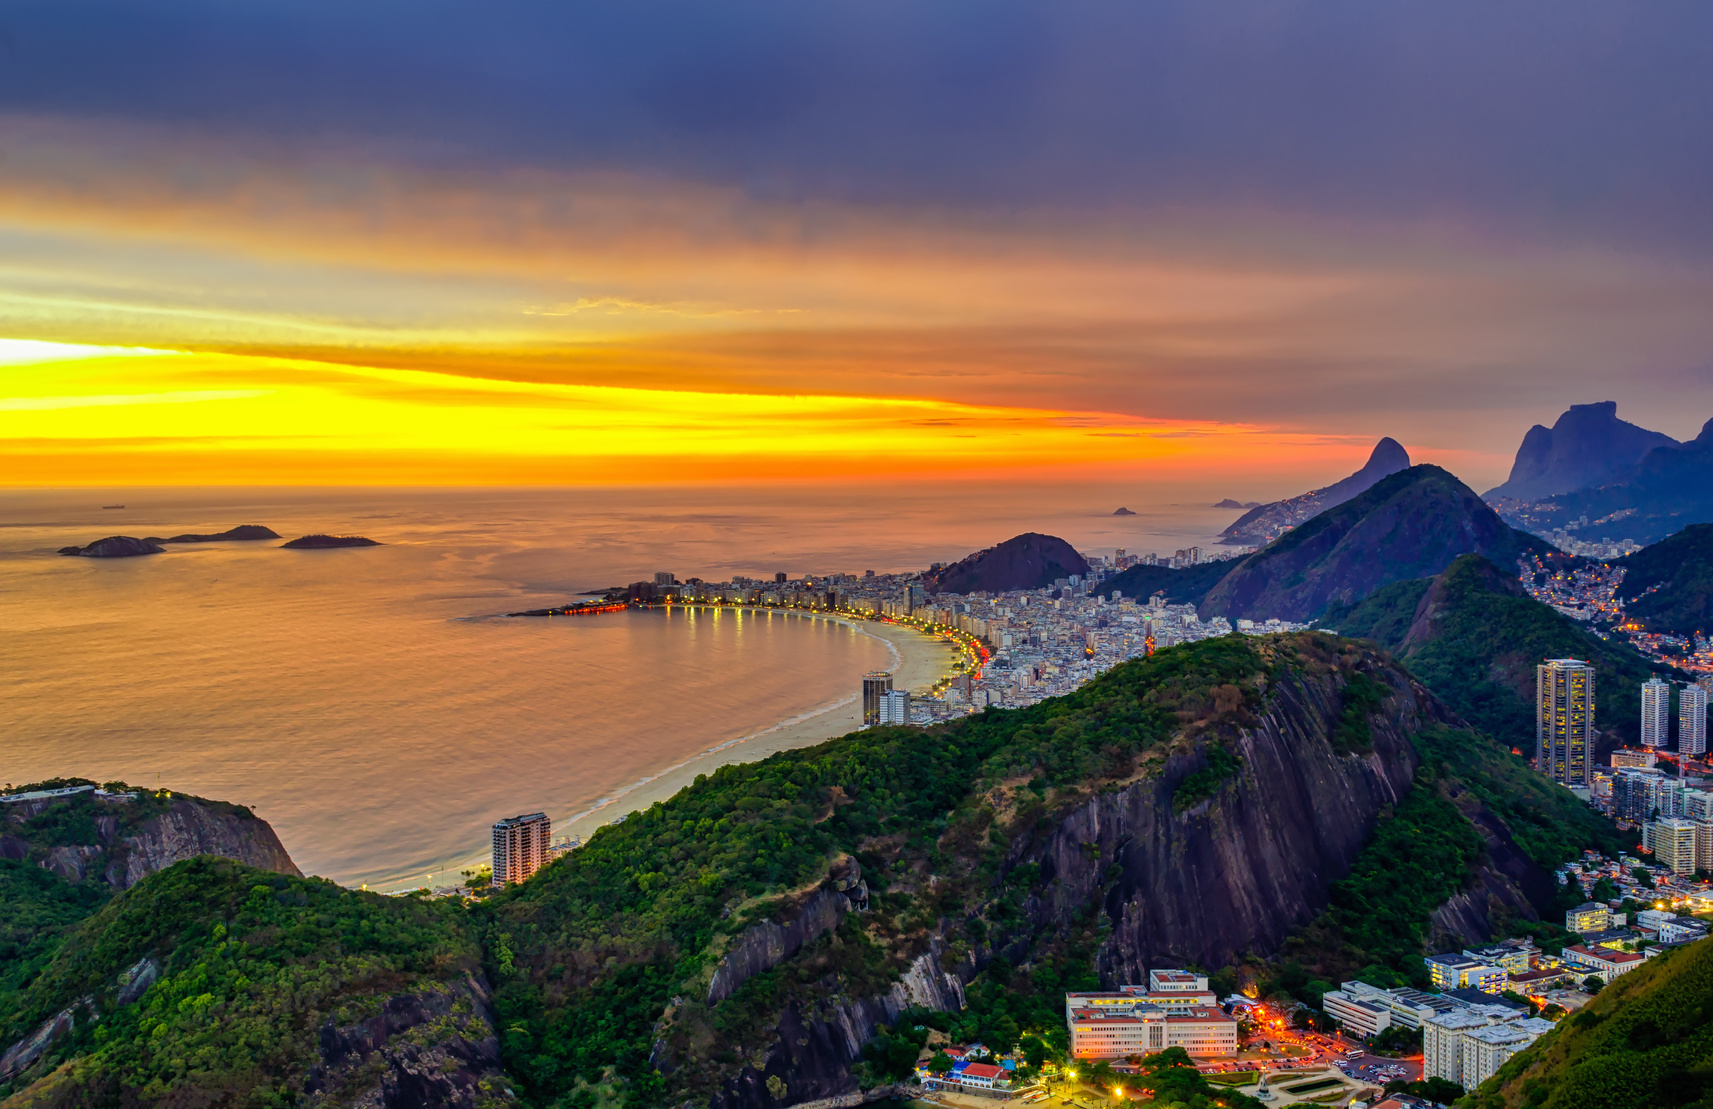 Port w Rio de Janeiro Biuro podróży Goforworld by Kuźniar